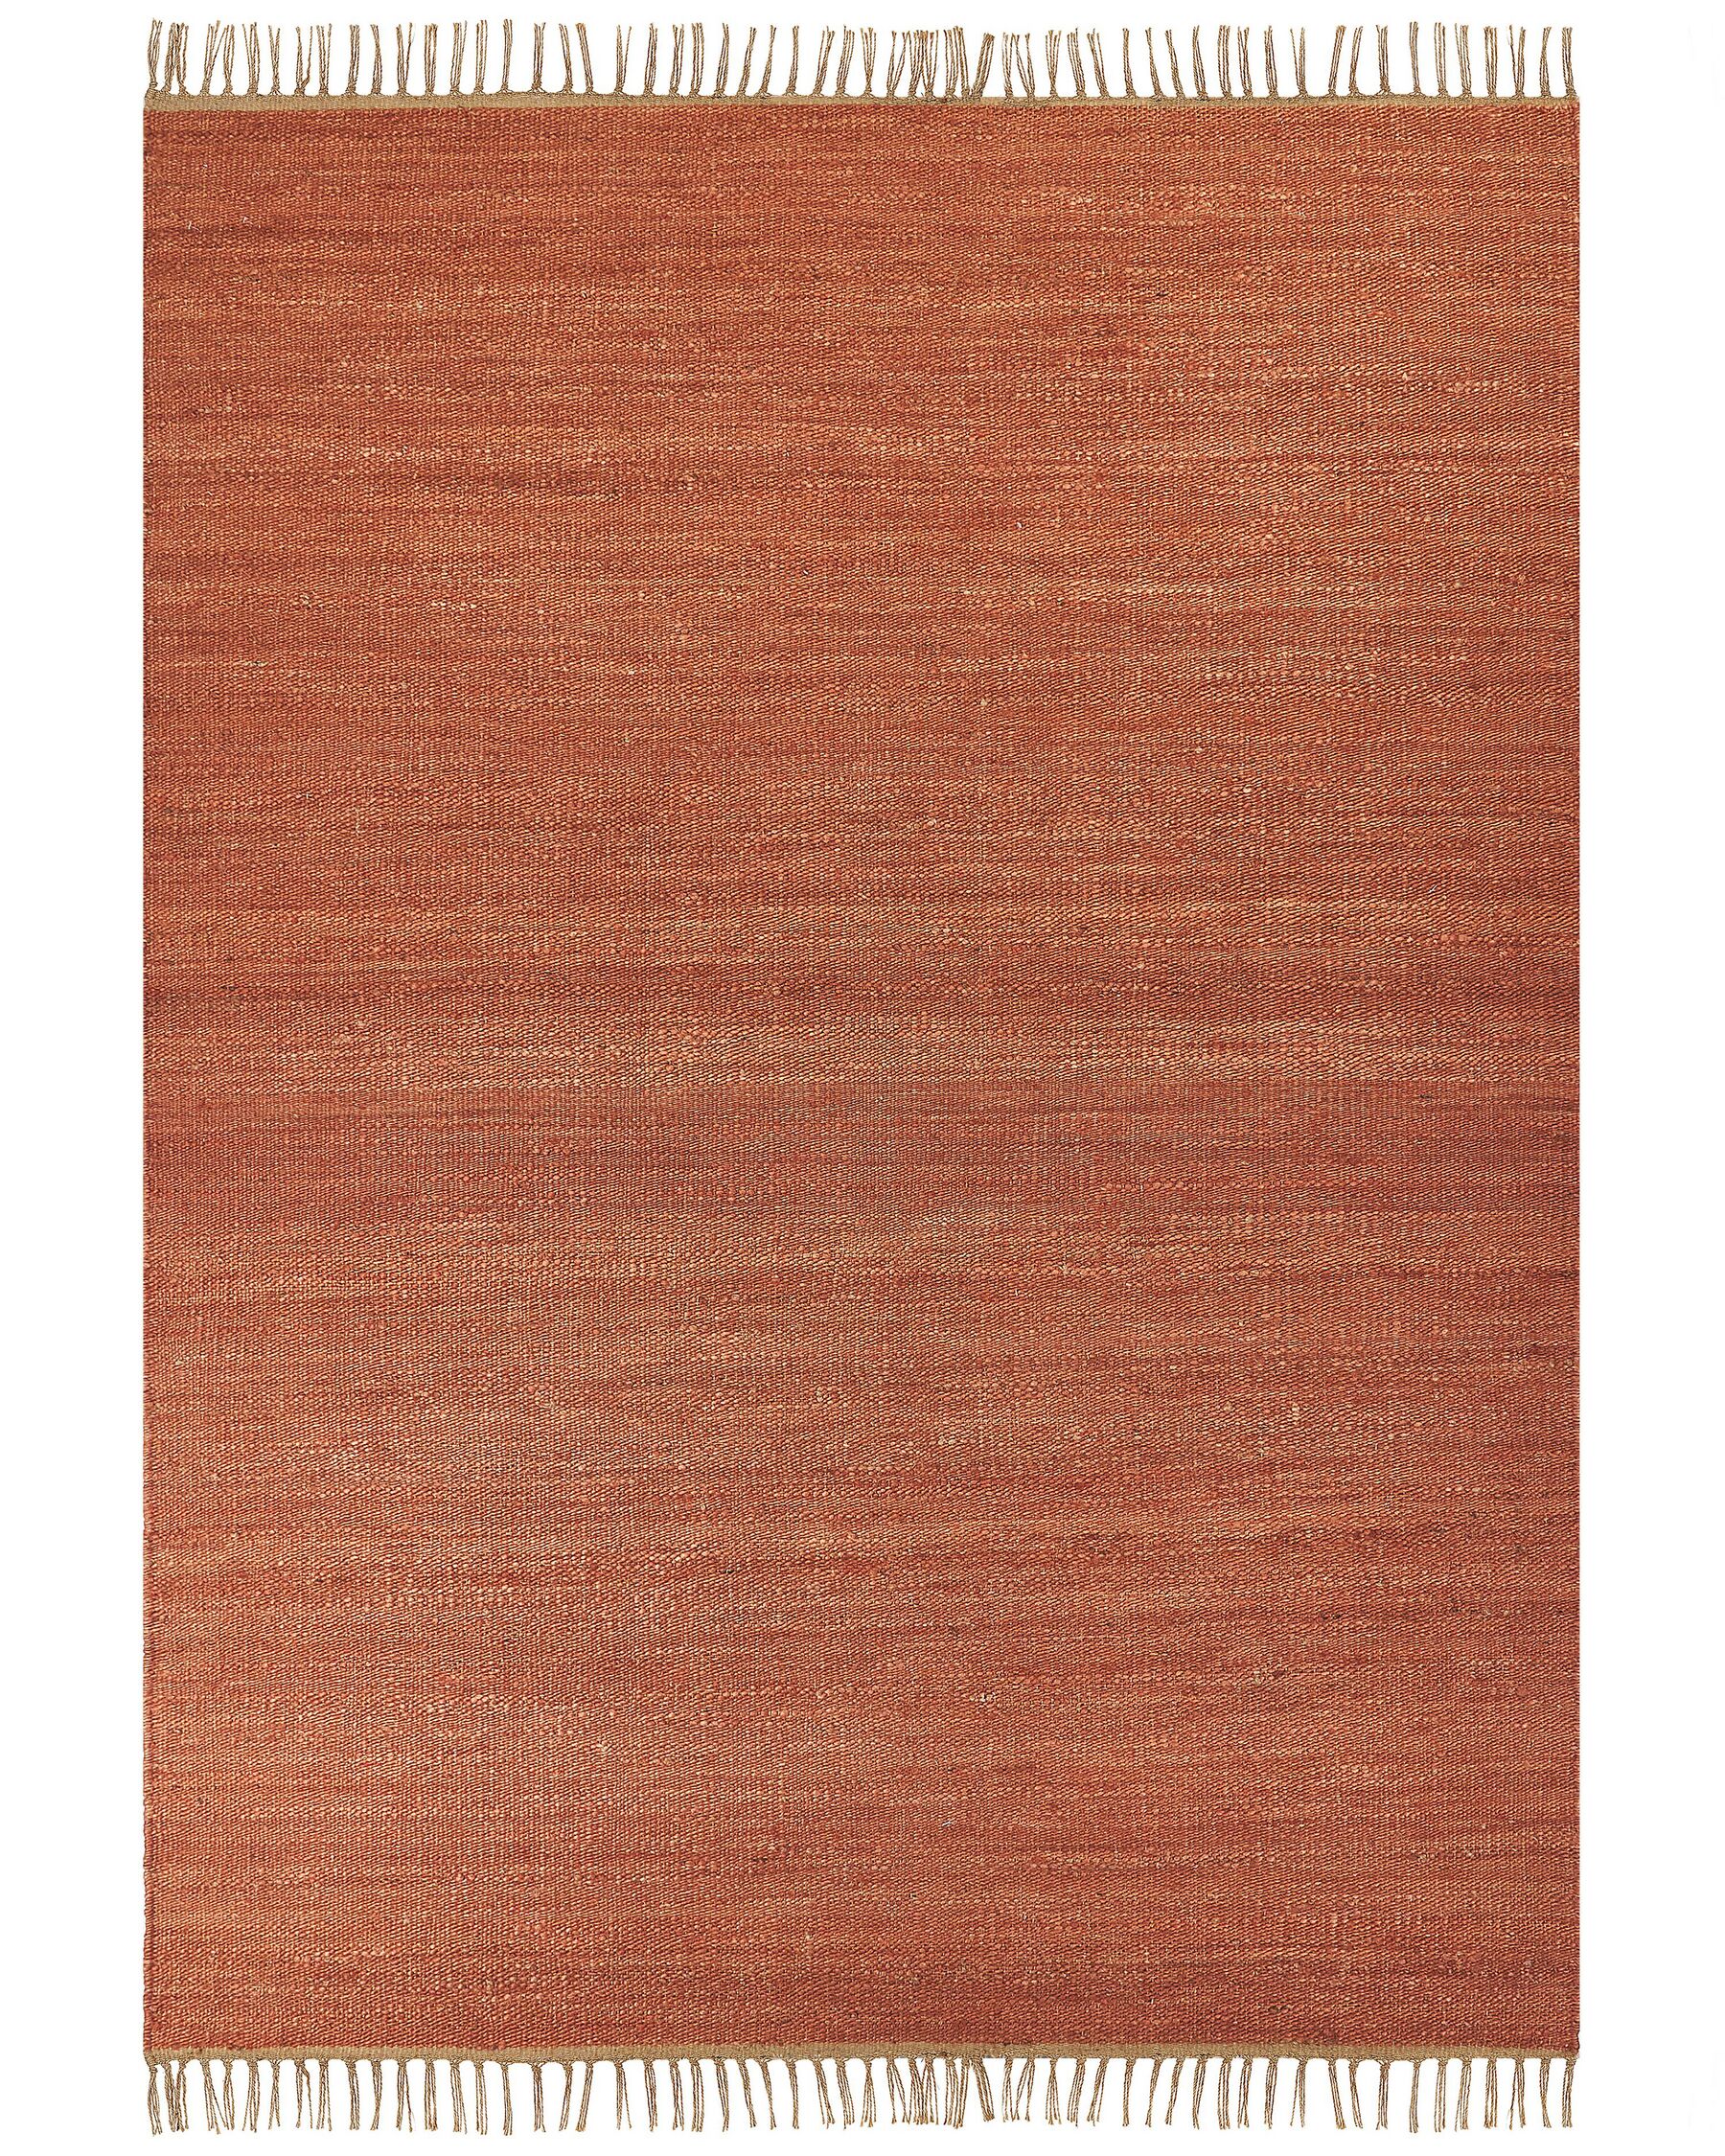 Jutový koberec 160 x 230 cm červený LUNIA_846248